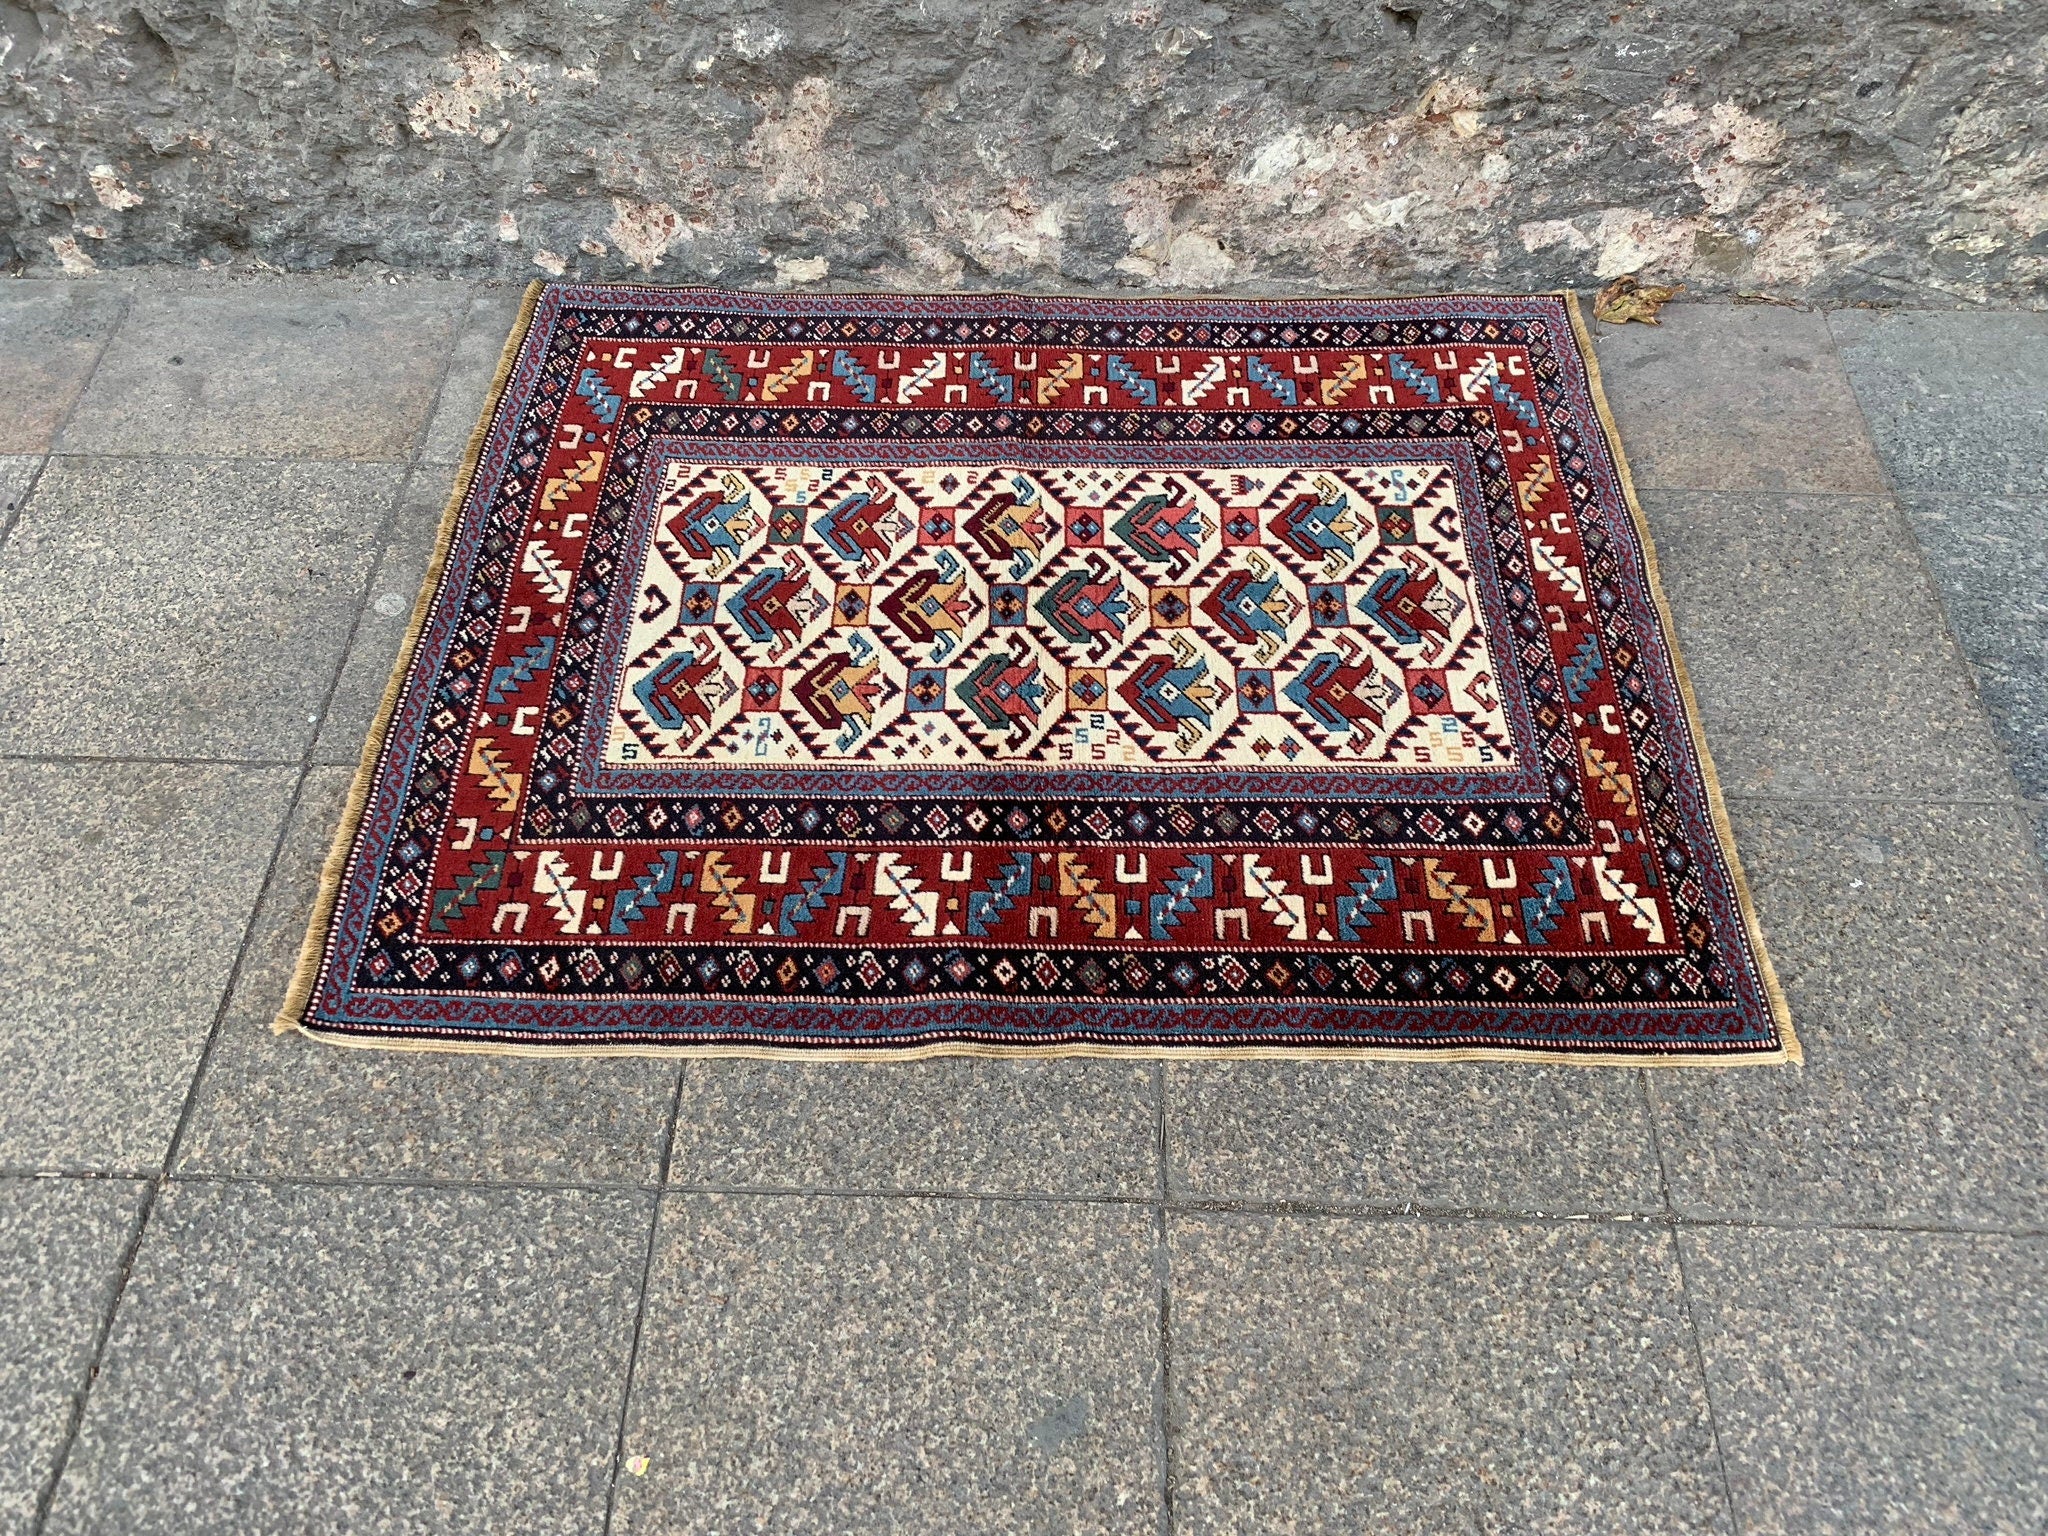 Authentic kilim rug, 3.4x4.2 ft, IM808